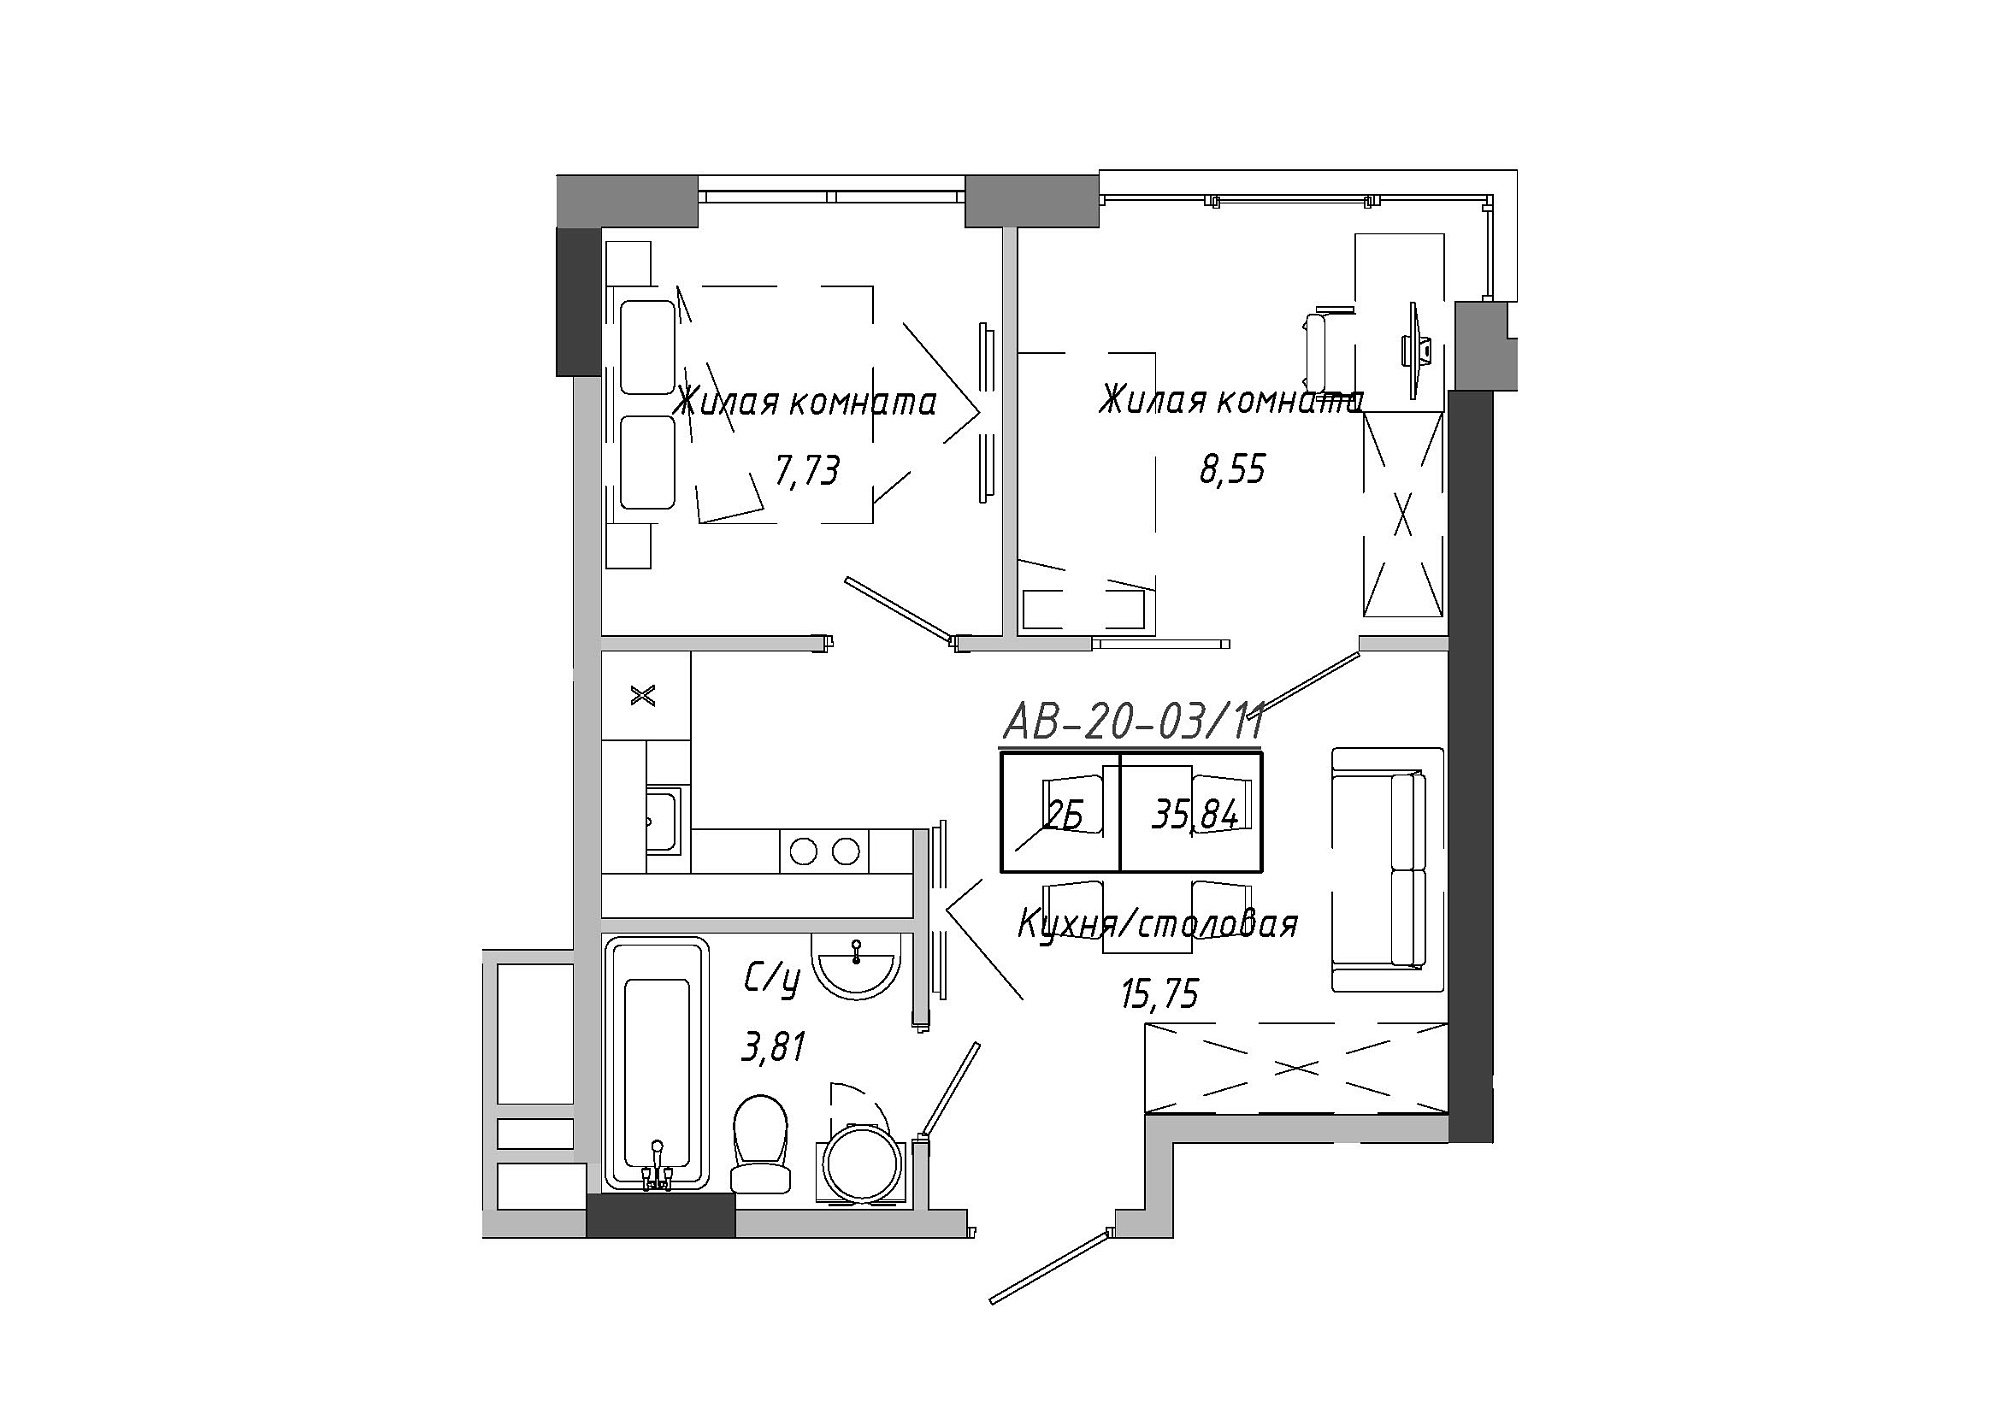 Планування 2-к квартира площею 35.84м2, AB-20-03/00011.